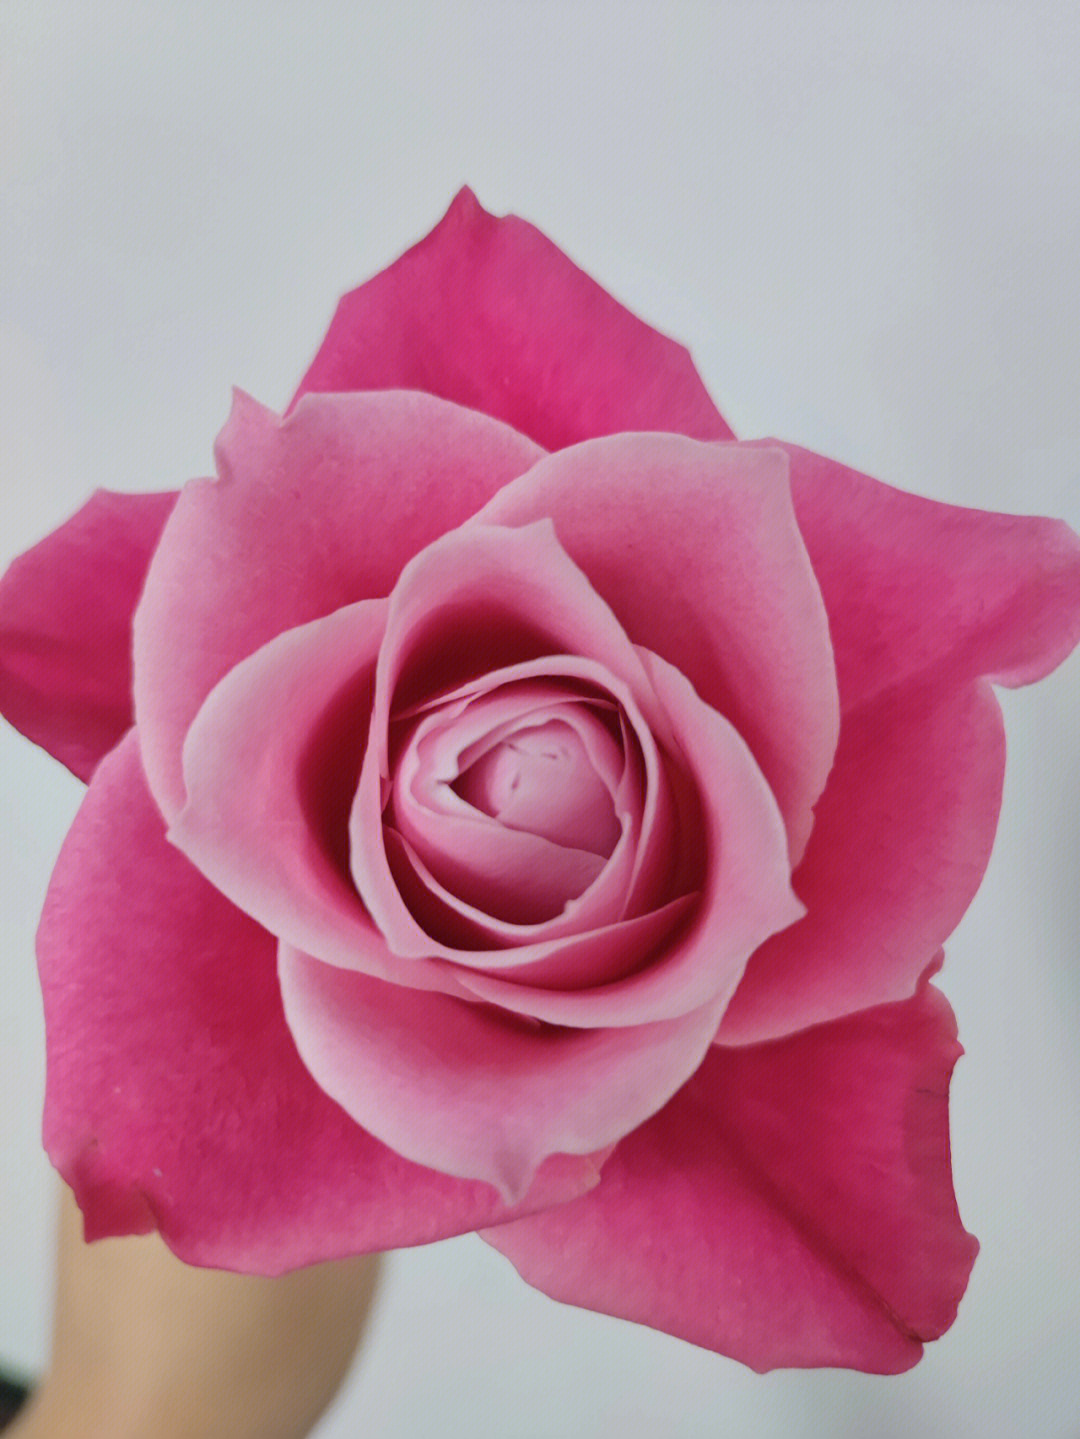 粉玫瑰泰姬图片